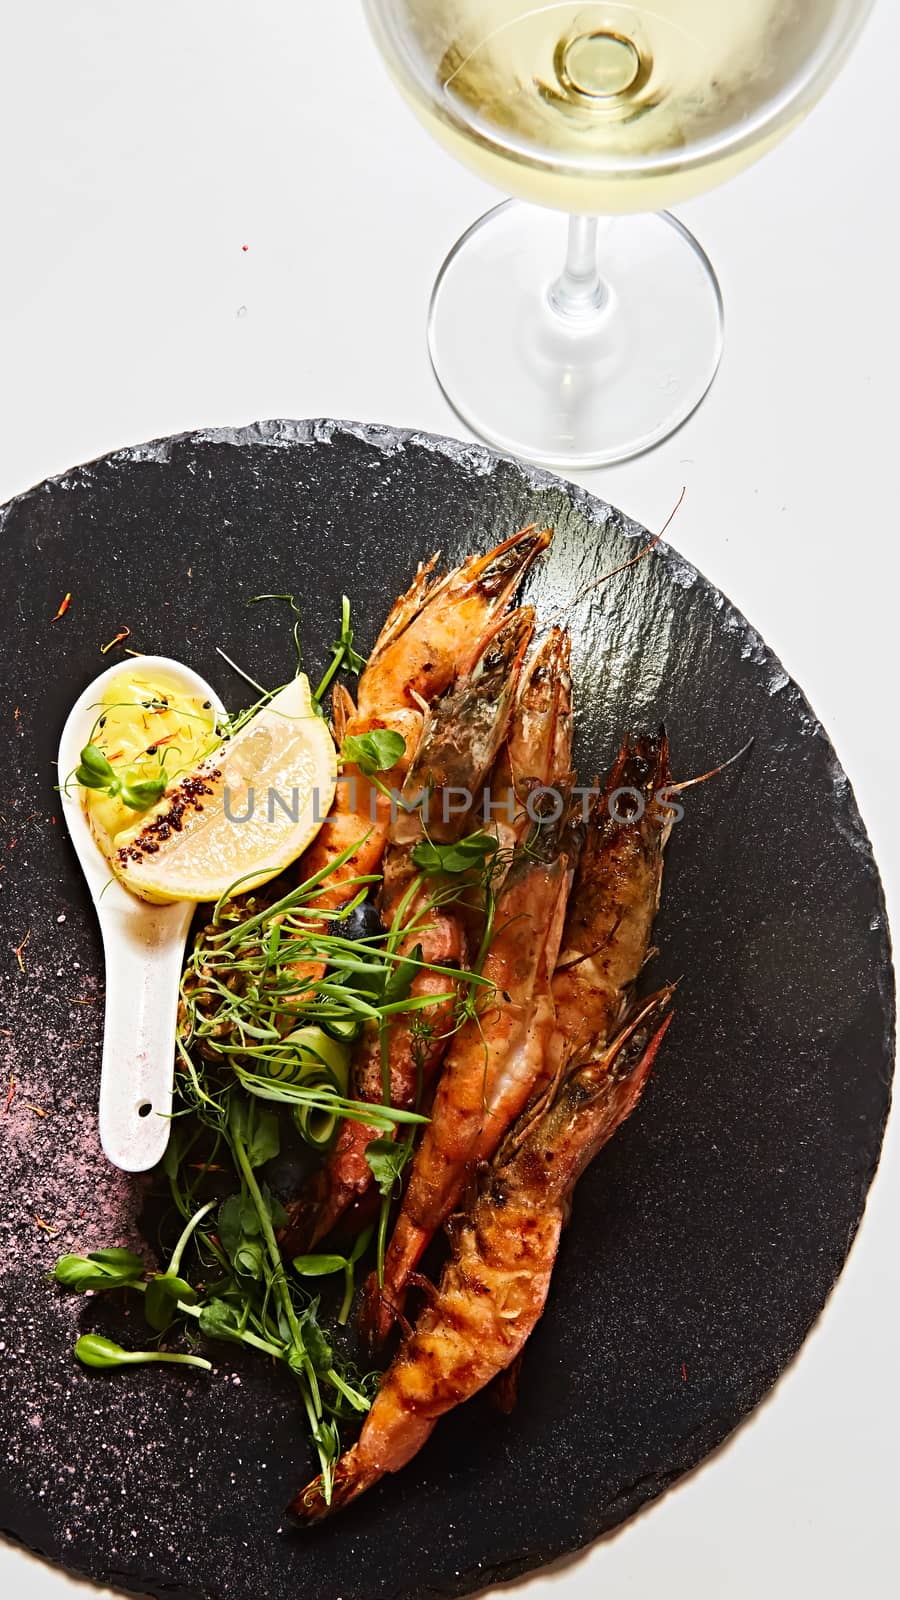 Grilled shrimp skewers. Seafood, shelfish. Shrimps Prawns skewers with herbs, garlic and lemon. by sarymsakov